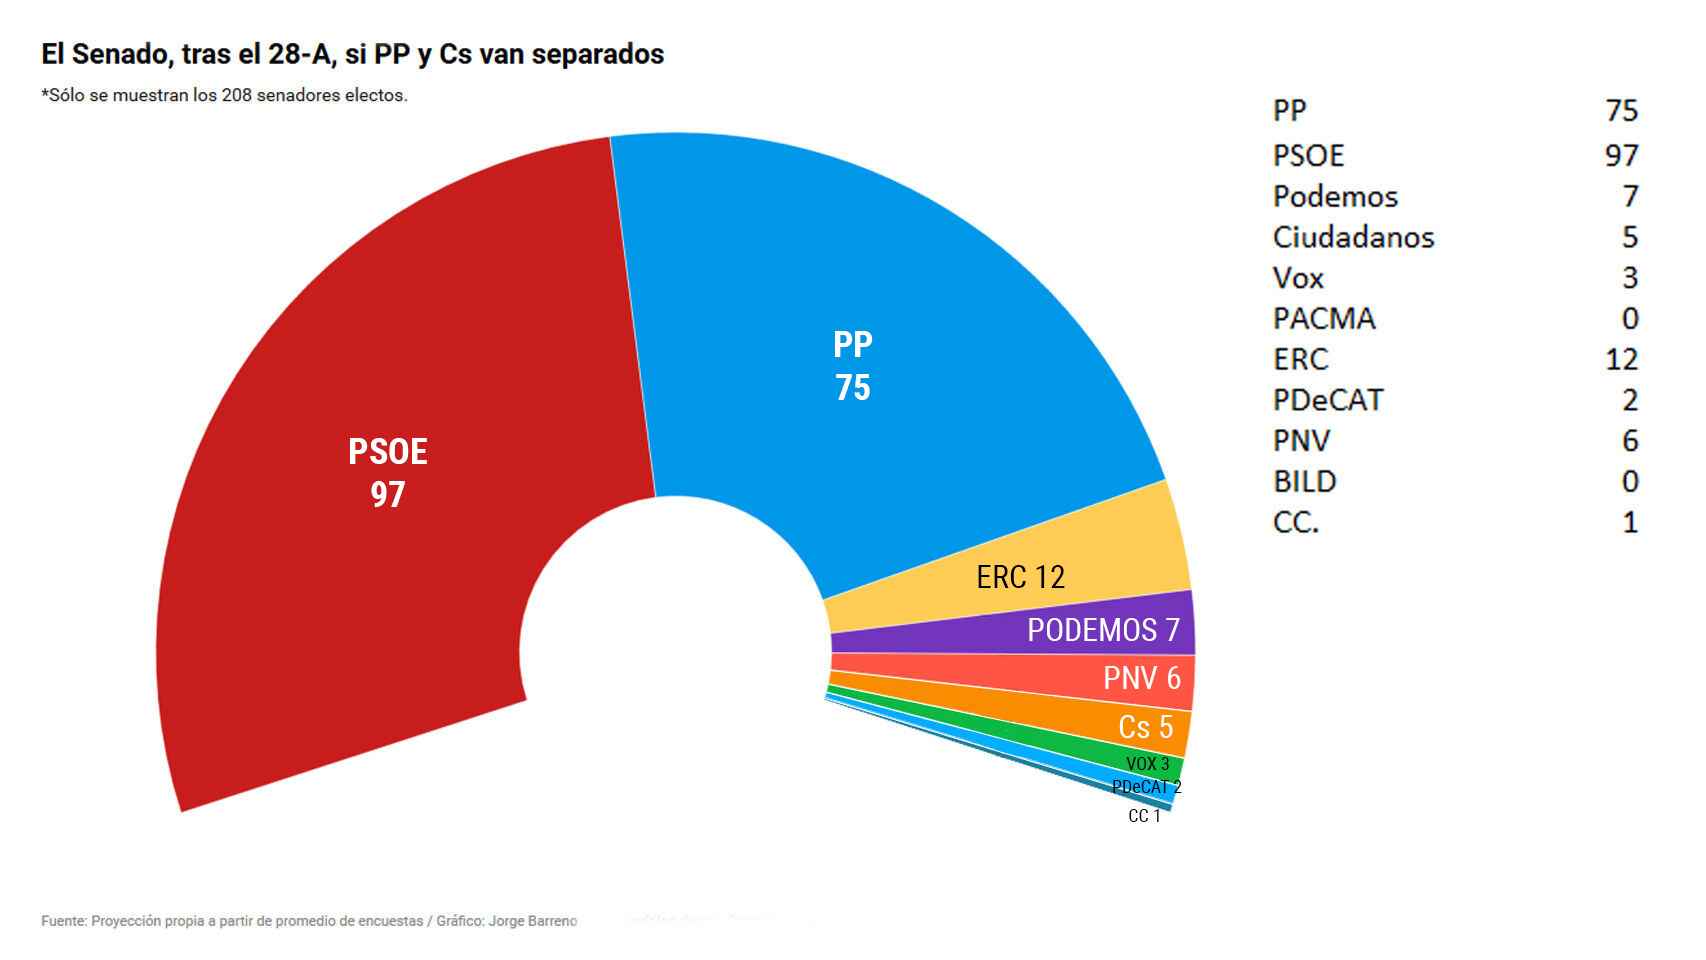 El PSOE ganaría en el Senado si PP y Ciudadanos van separados.